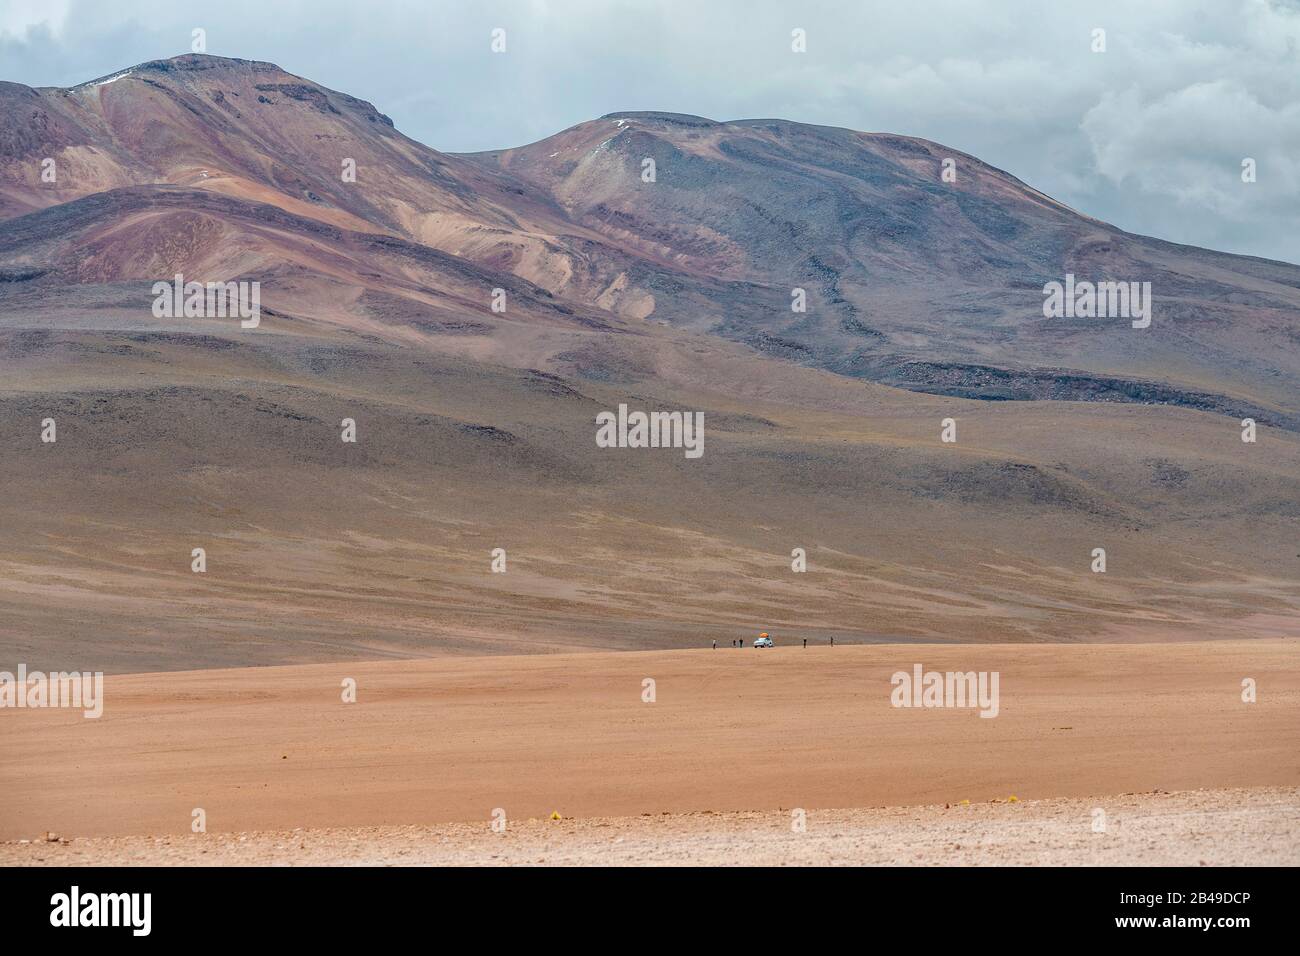 La montagna dei sette Colori nel deserto dei Siloli dell'Altiplano boliviano. Foto Stock